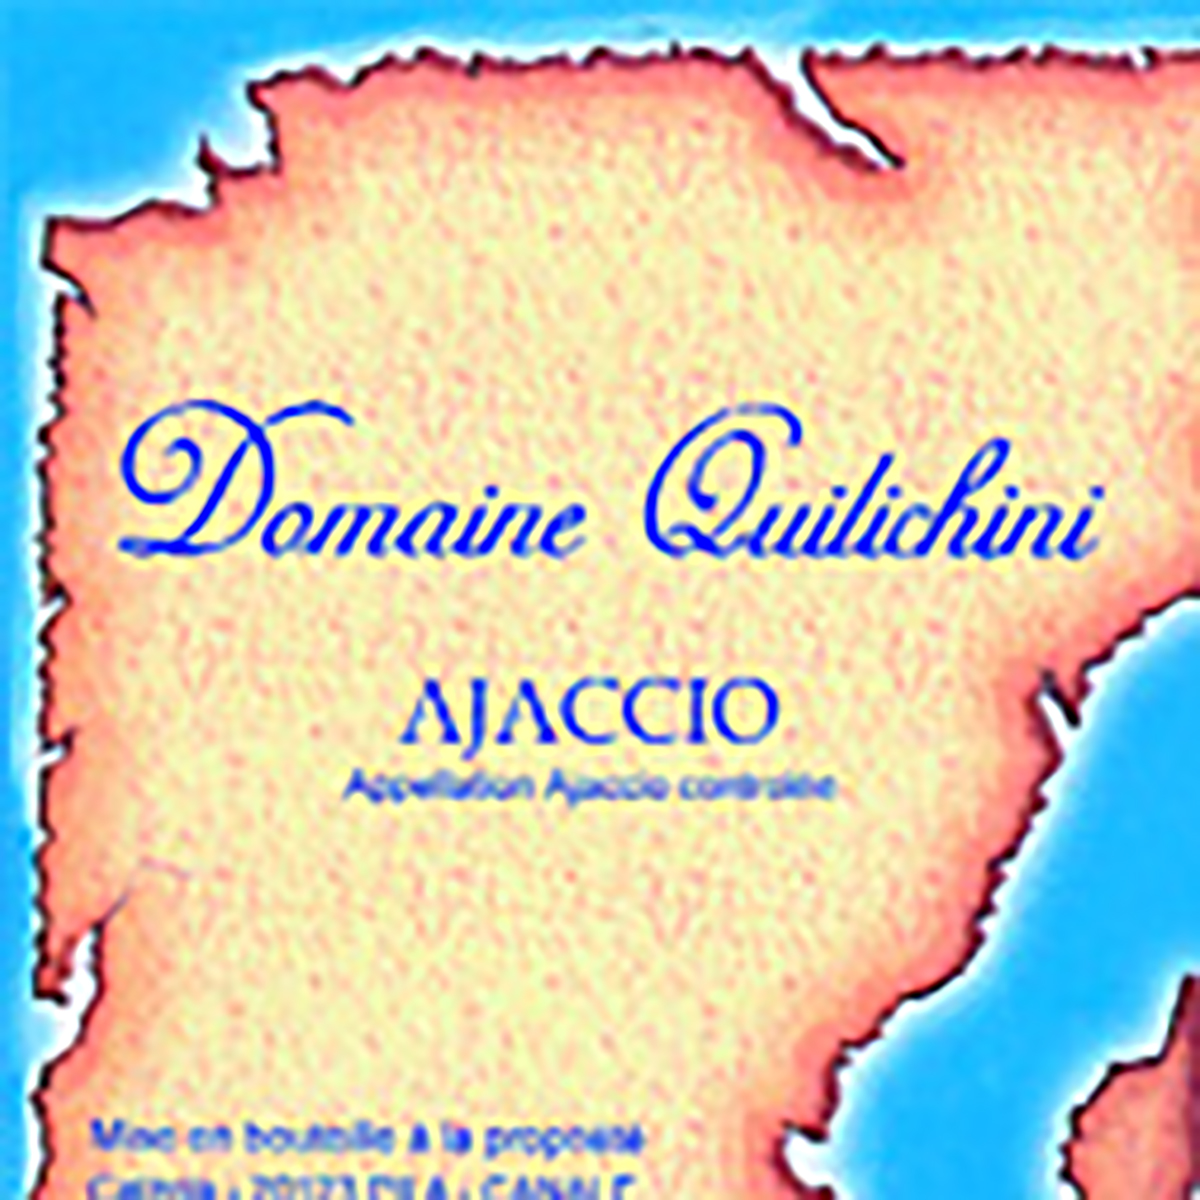 Domaine Quilichini